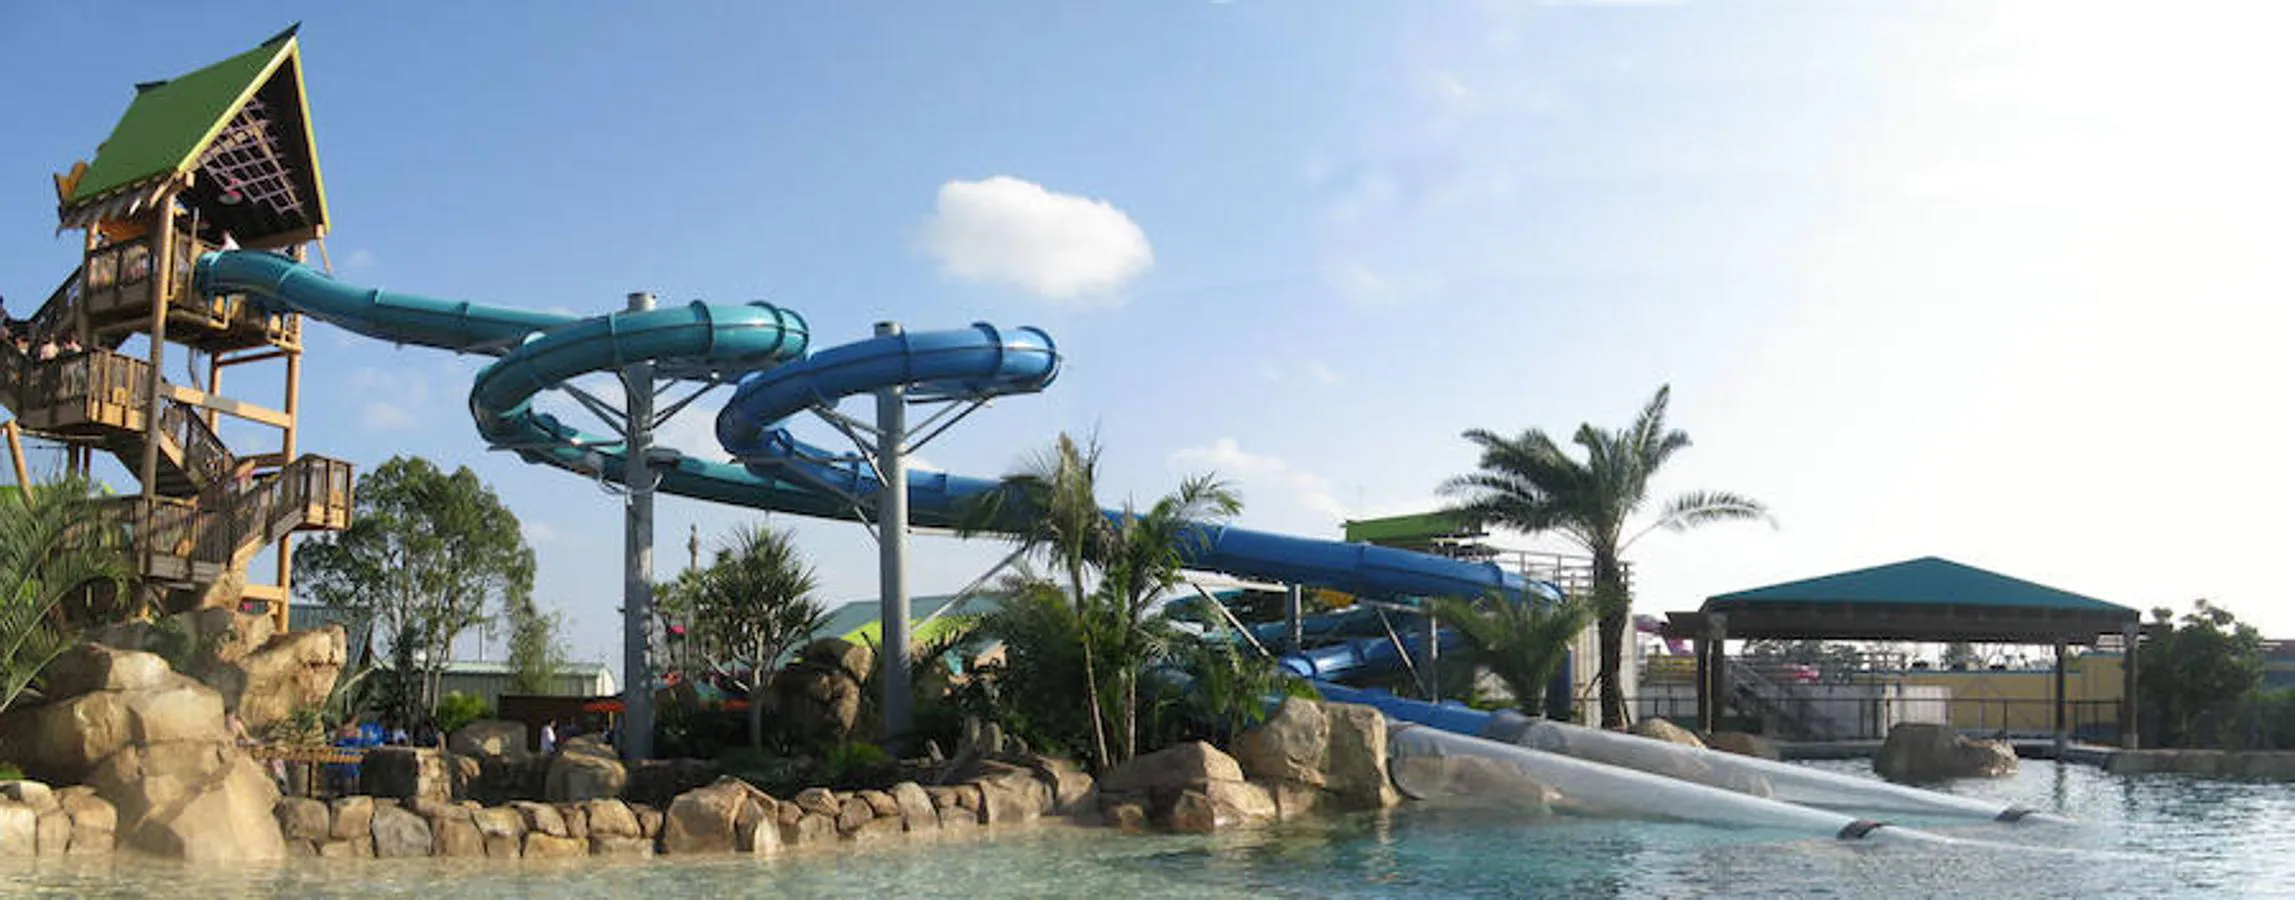 Aquatica (Orlando) | El Aquatica, situado en Orlando, Florida, es uno de los parques más populares del mundo. Con un total de 1.382.000 visitantes en 2017, ostenta el puesto número ocho de la lista.